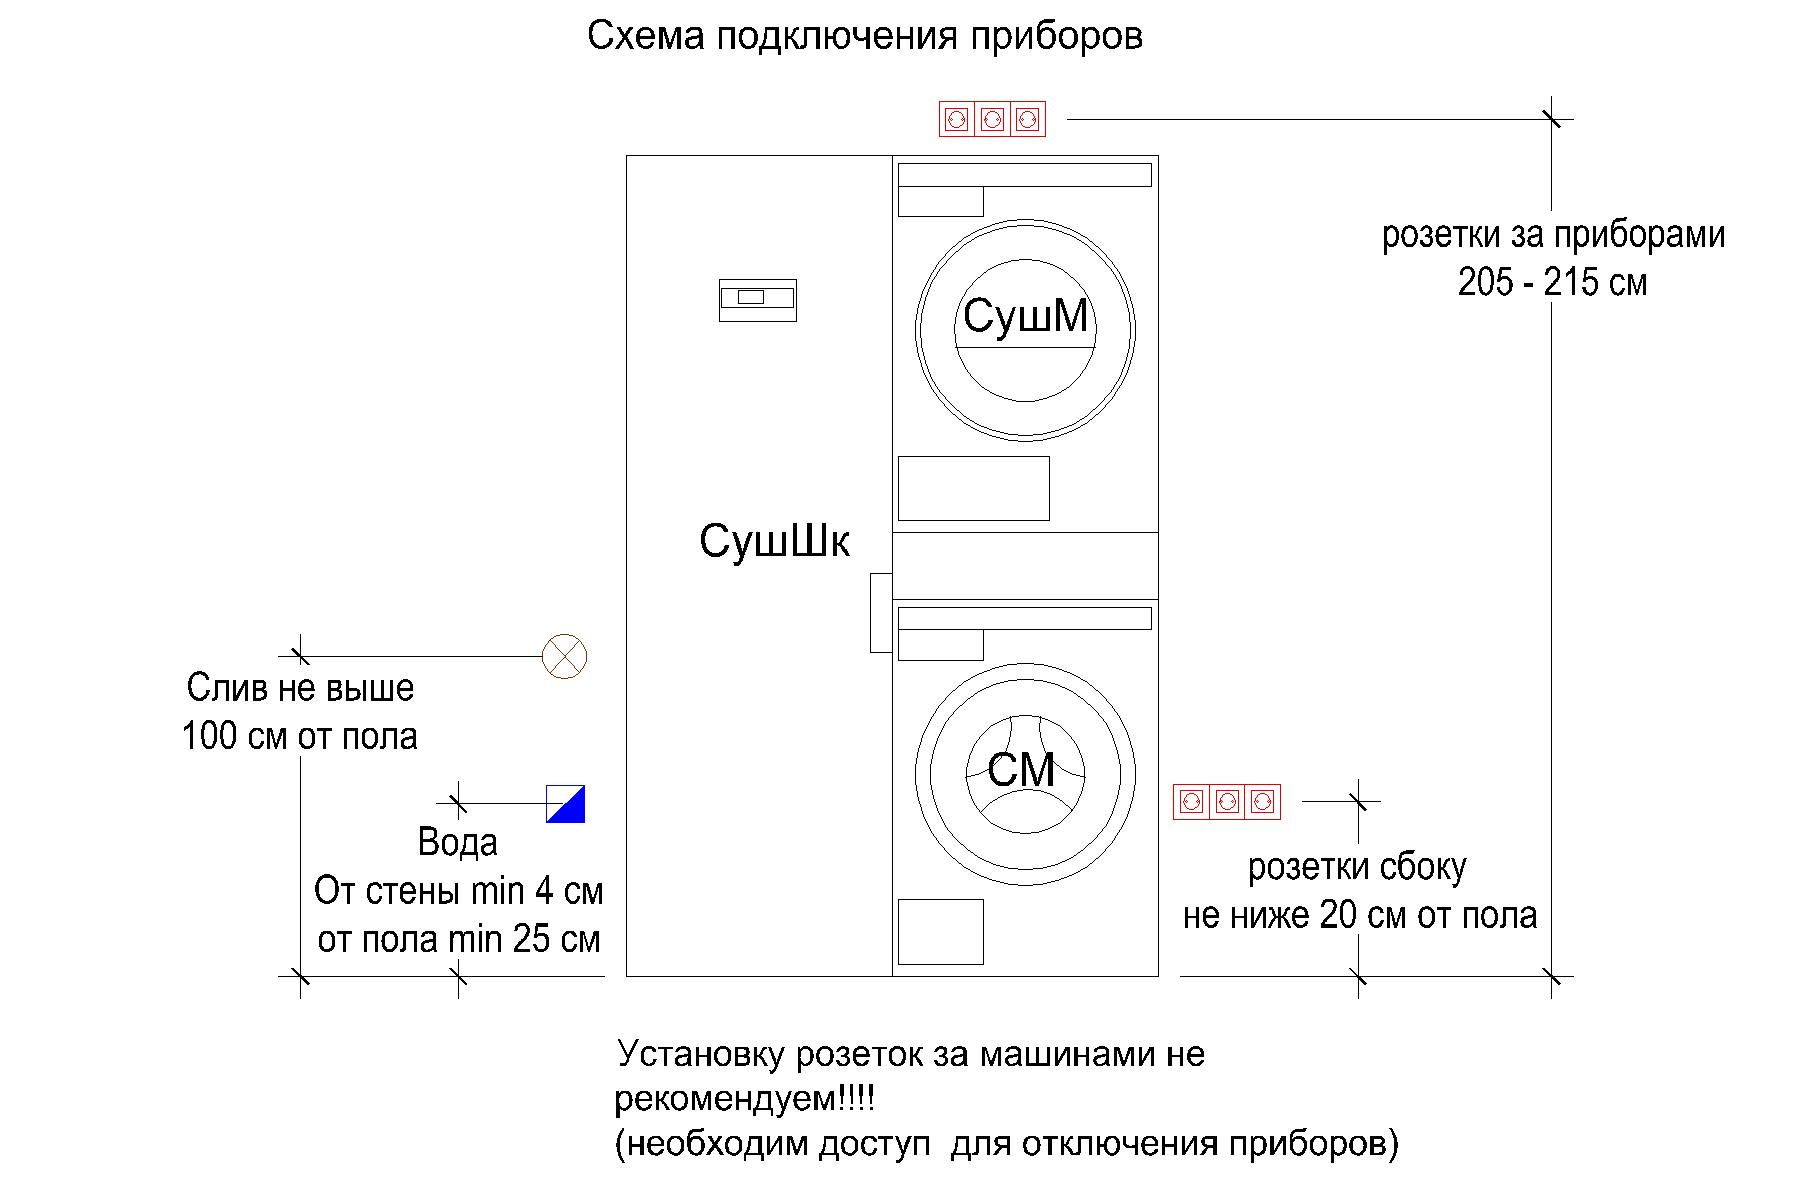 Инструкция по установке стиральной машины и сушильной машины в колонну